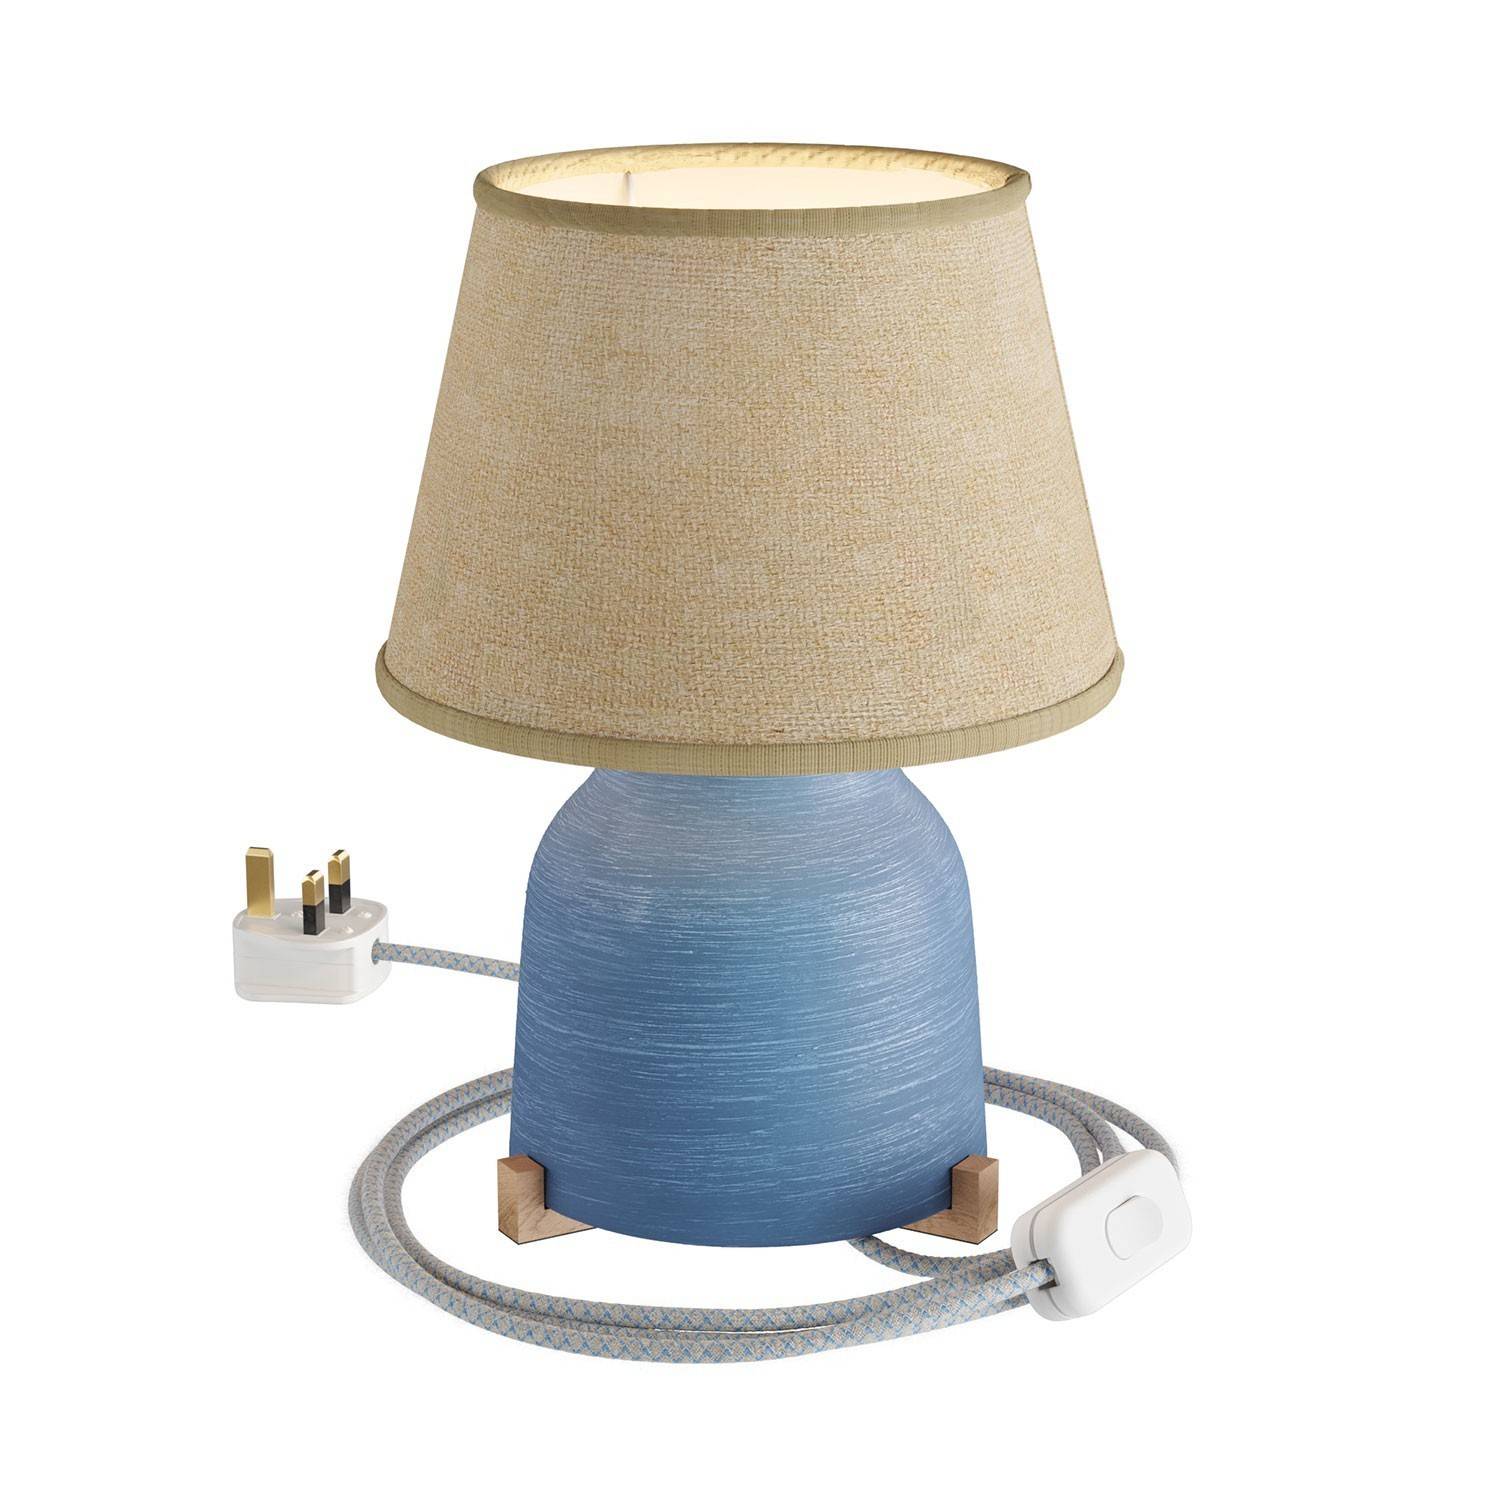 Ceramiczna lampa stołowa Vaso z kloszem Impero, w komplecie z kablem tekstylnym, przełącznikiem i wtyczką UK